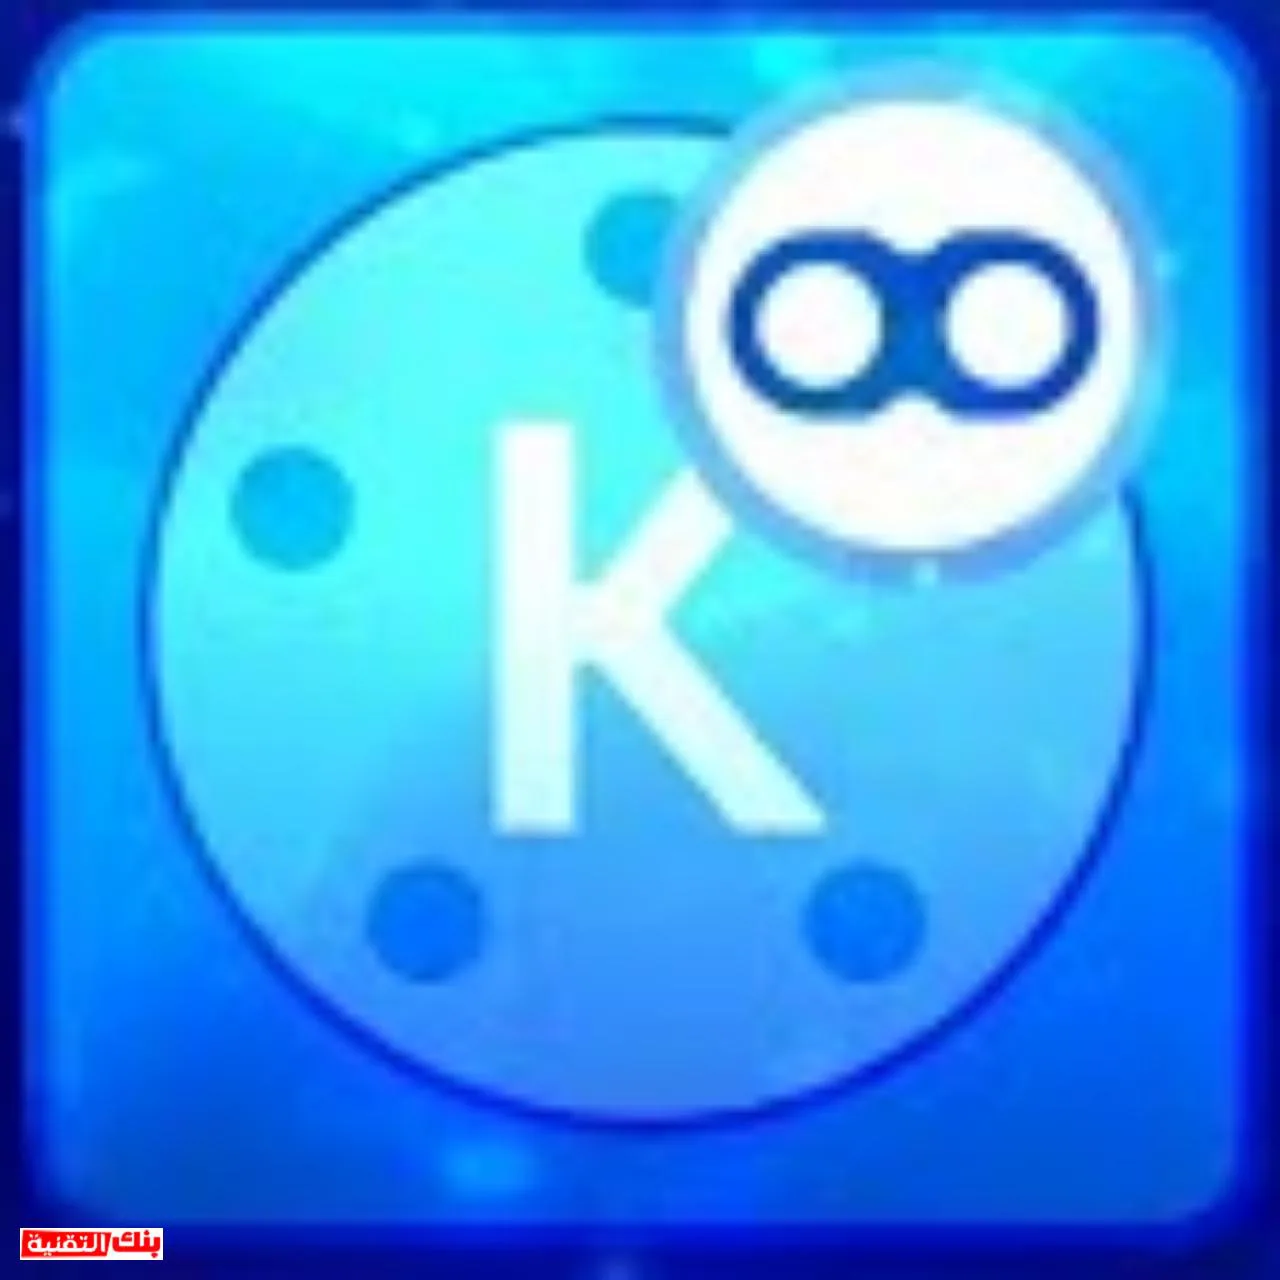 تحميل كين ماستر الازرق تحميل كين ماستر الازرق KineMaster بدون علامة مائية مجانا kinemaster, كين ماستر الازرق